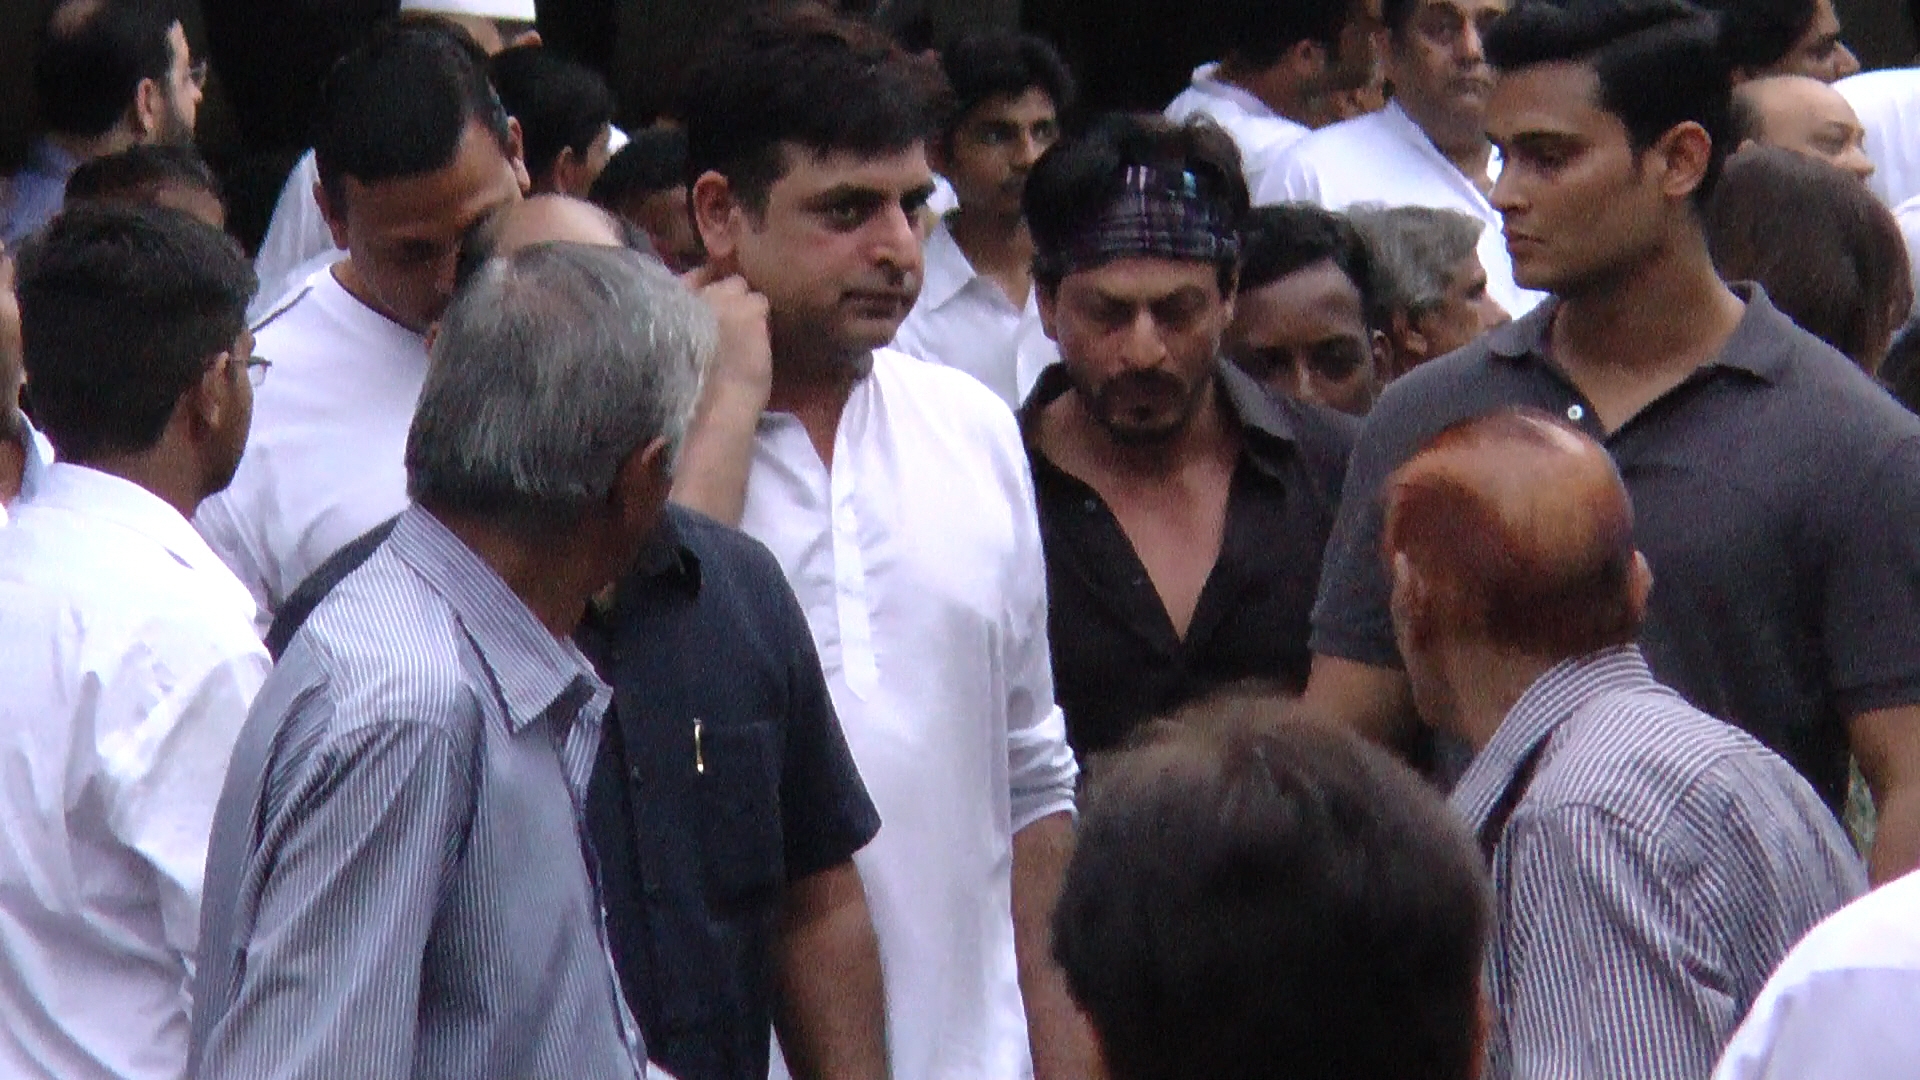 Shah Rukh Khan in black